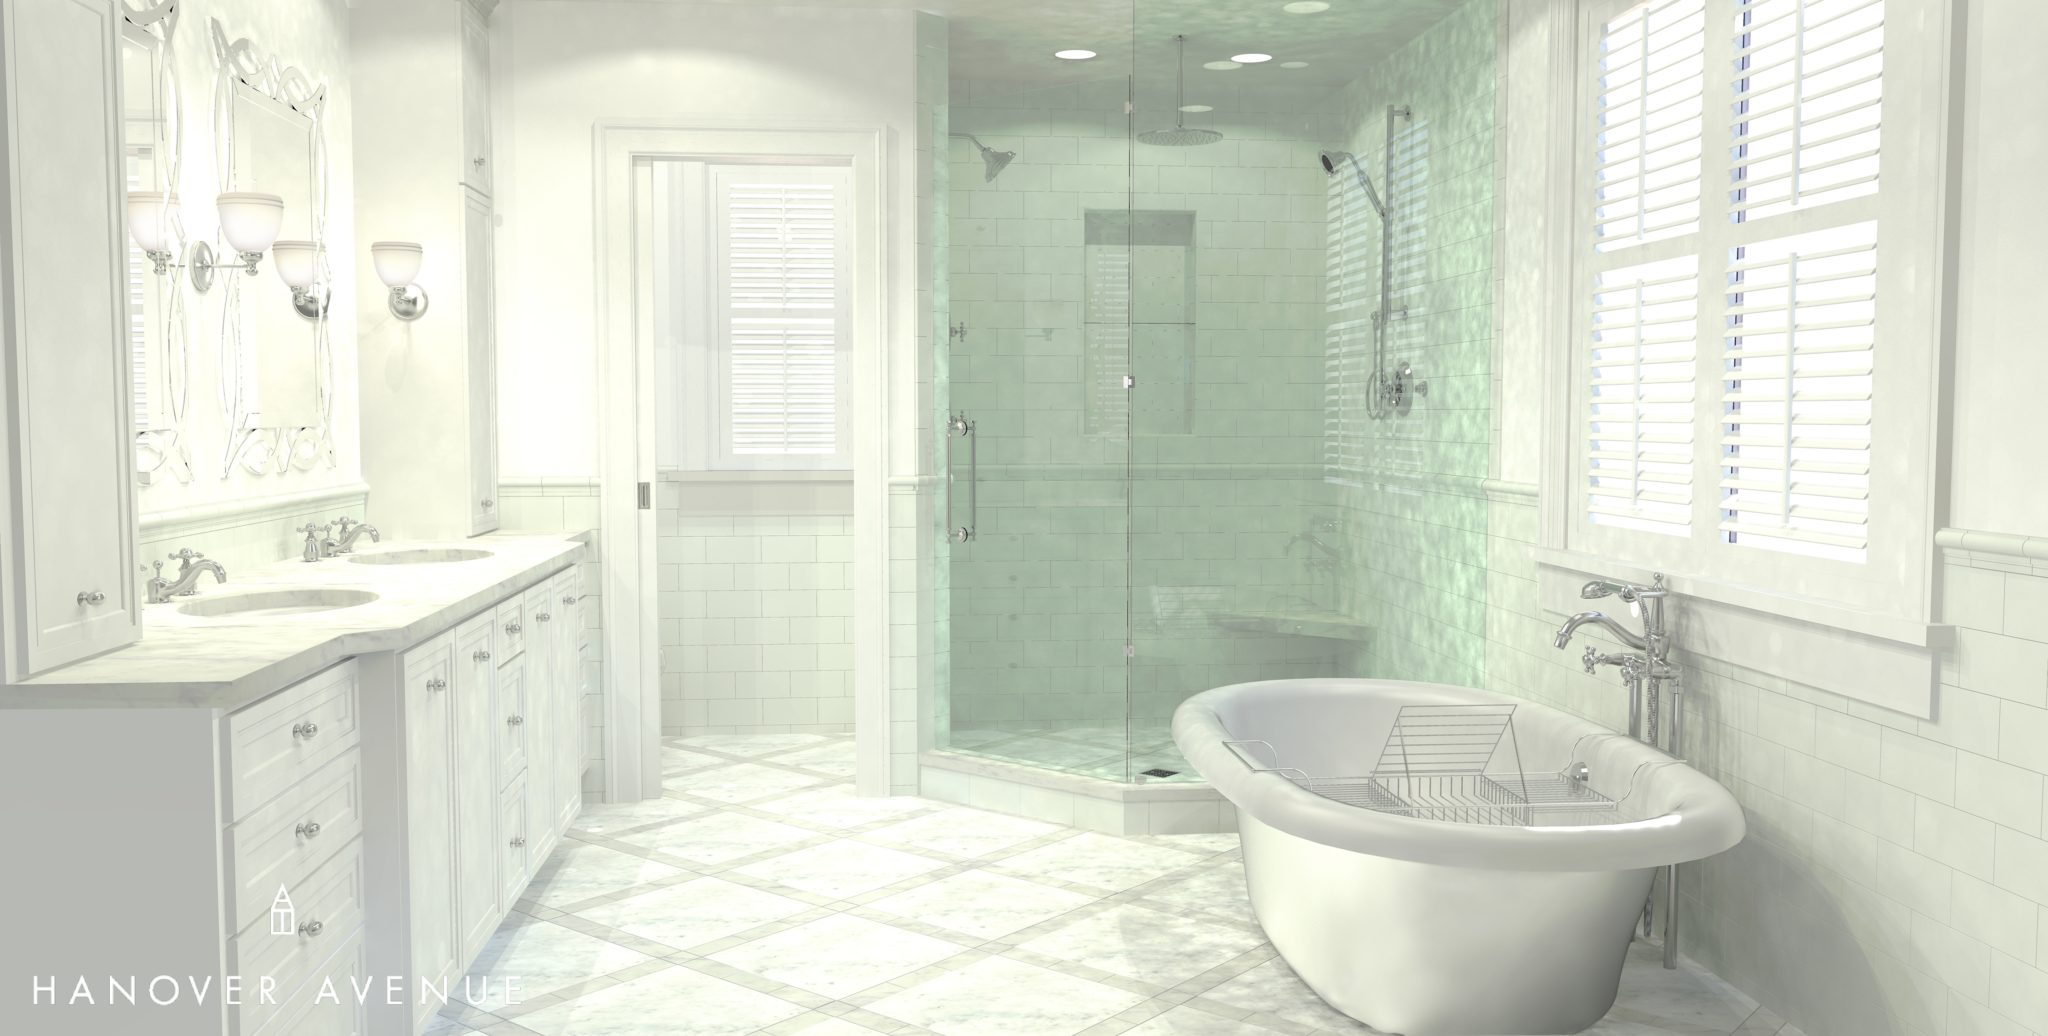 Shower view, lowe's, kohler, white, bathroom, plain, shannon kaye